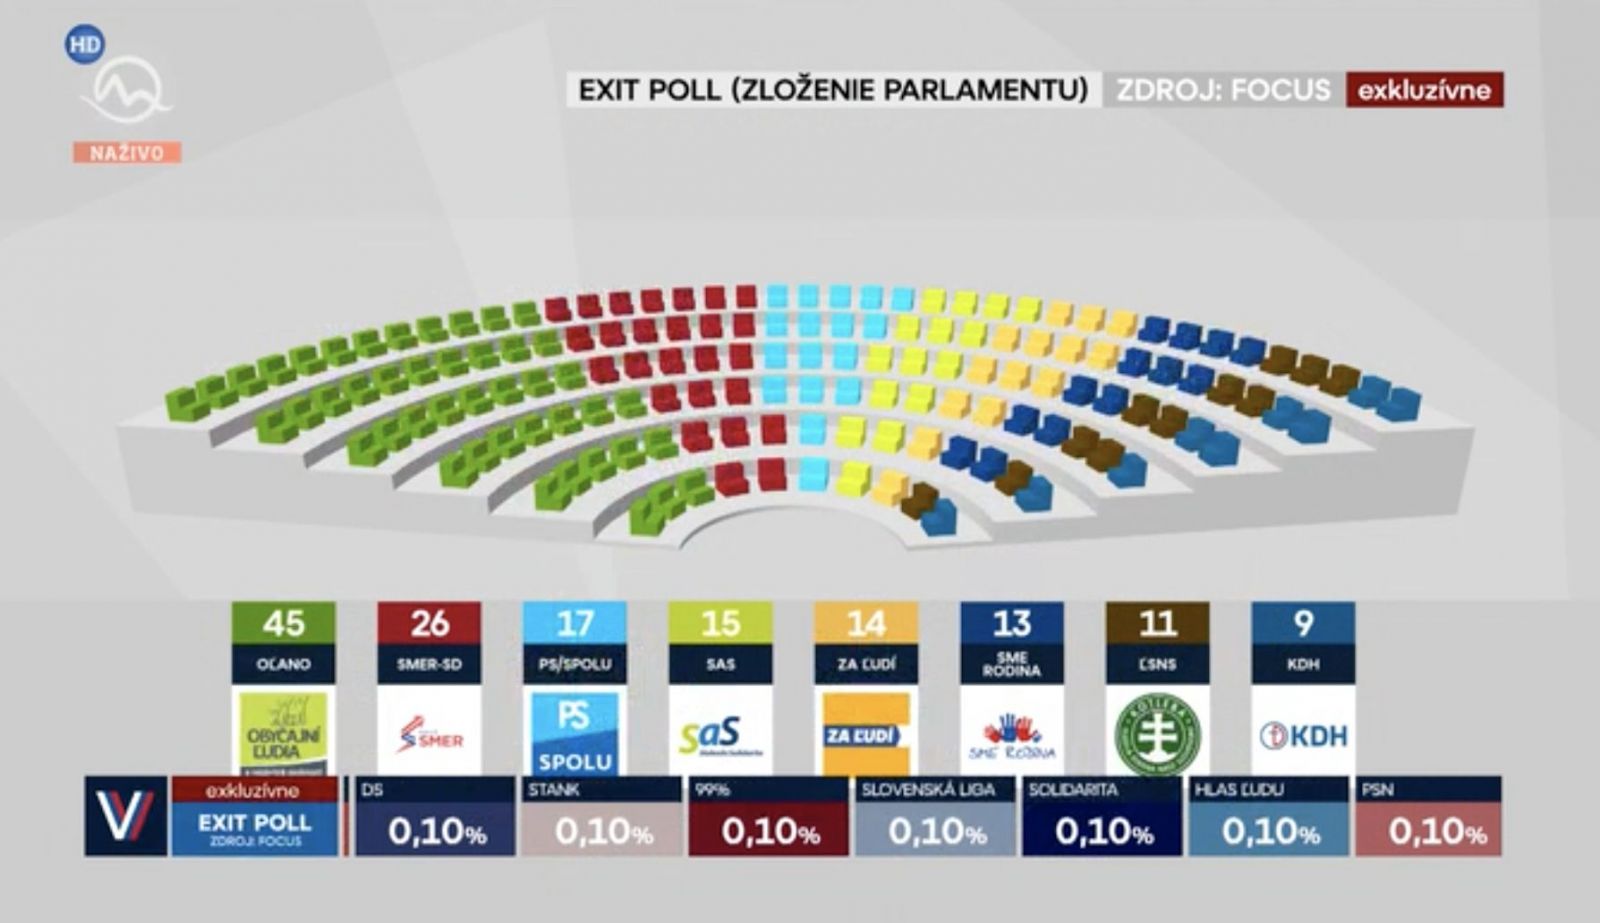 Takto bude vyzerať parlament podľa exit pollu. Demokratická opozícia môže mať ústavnú väčšinu